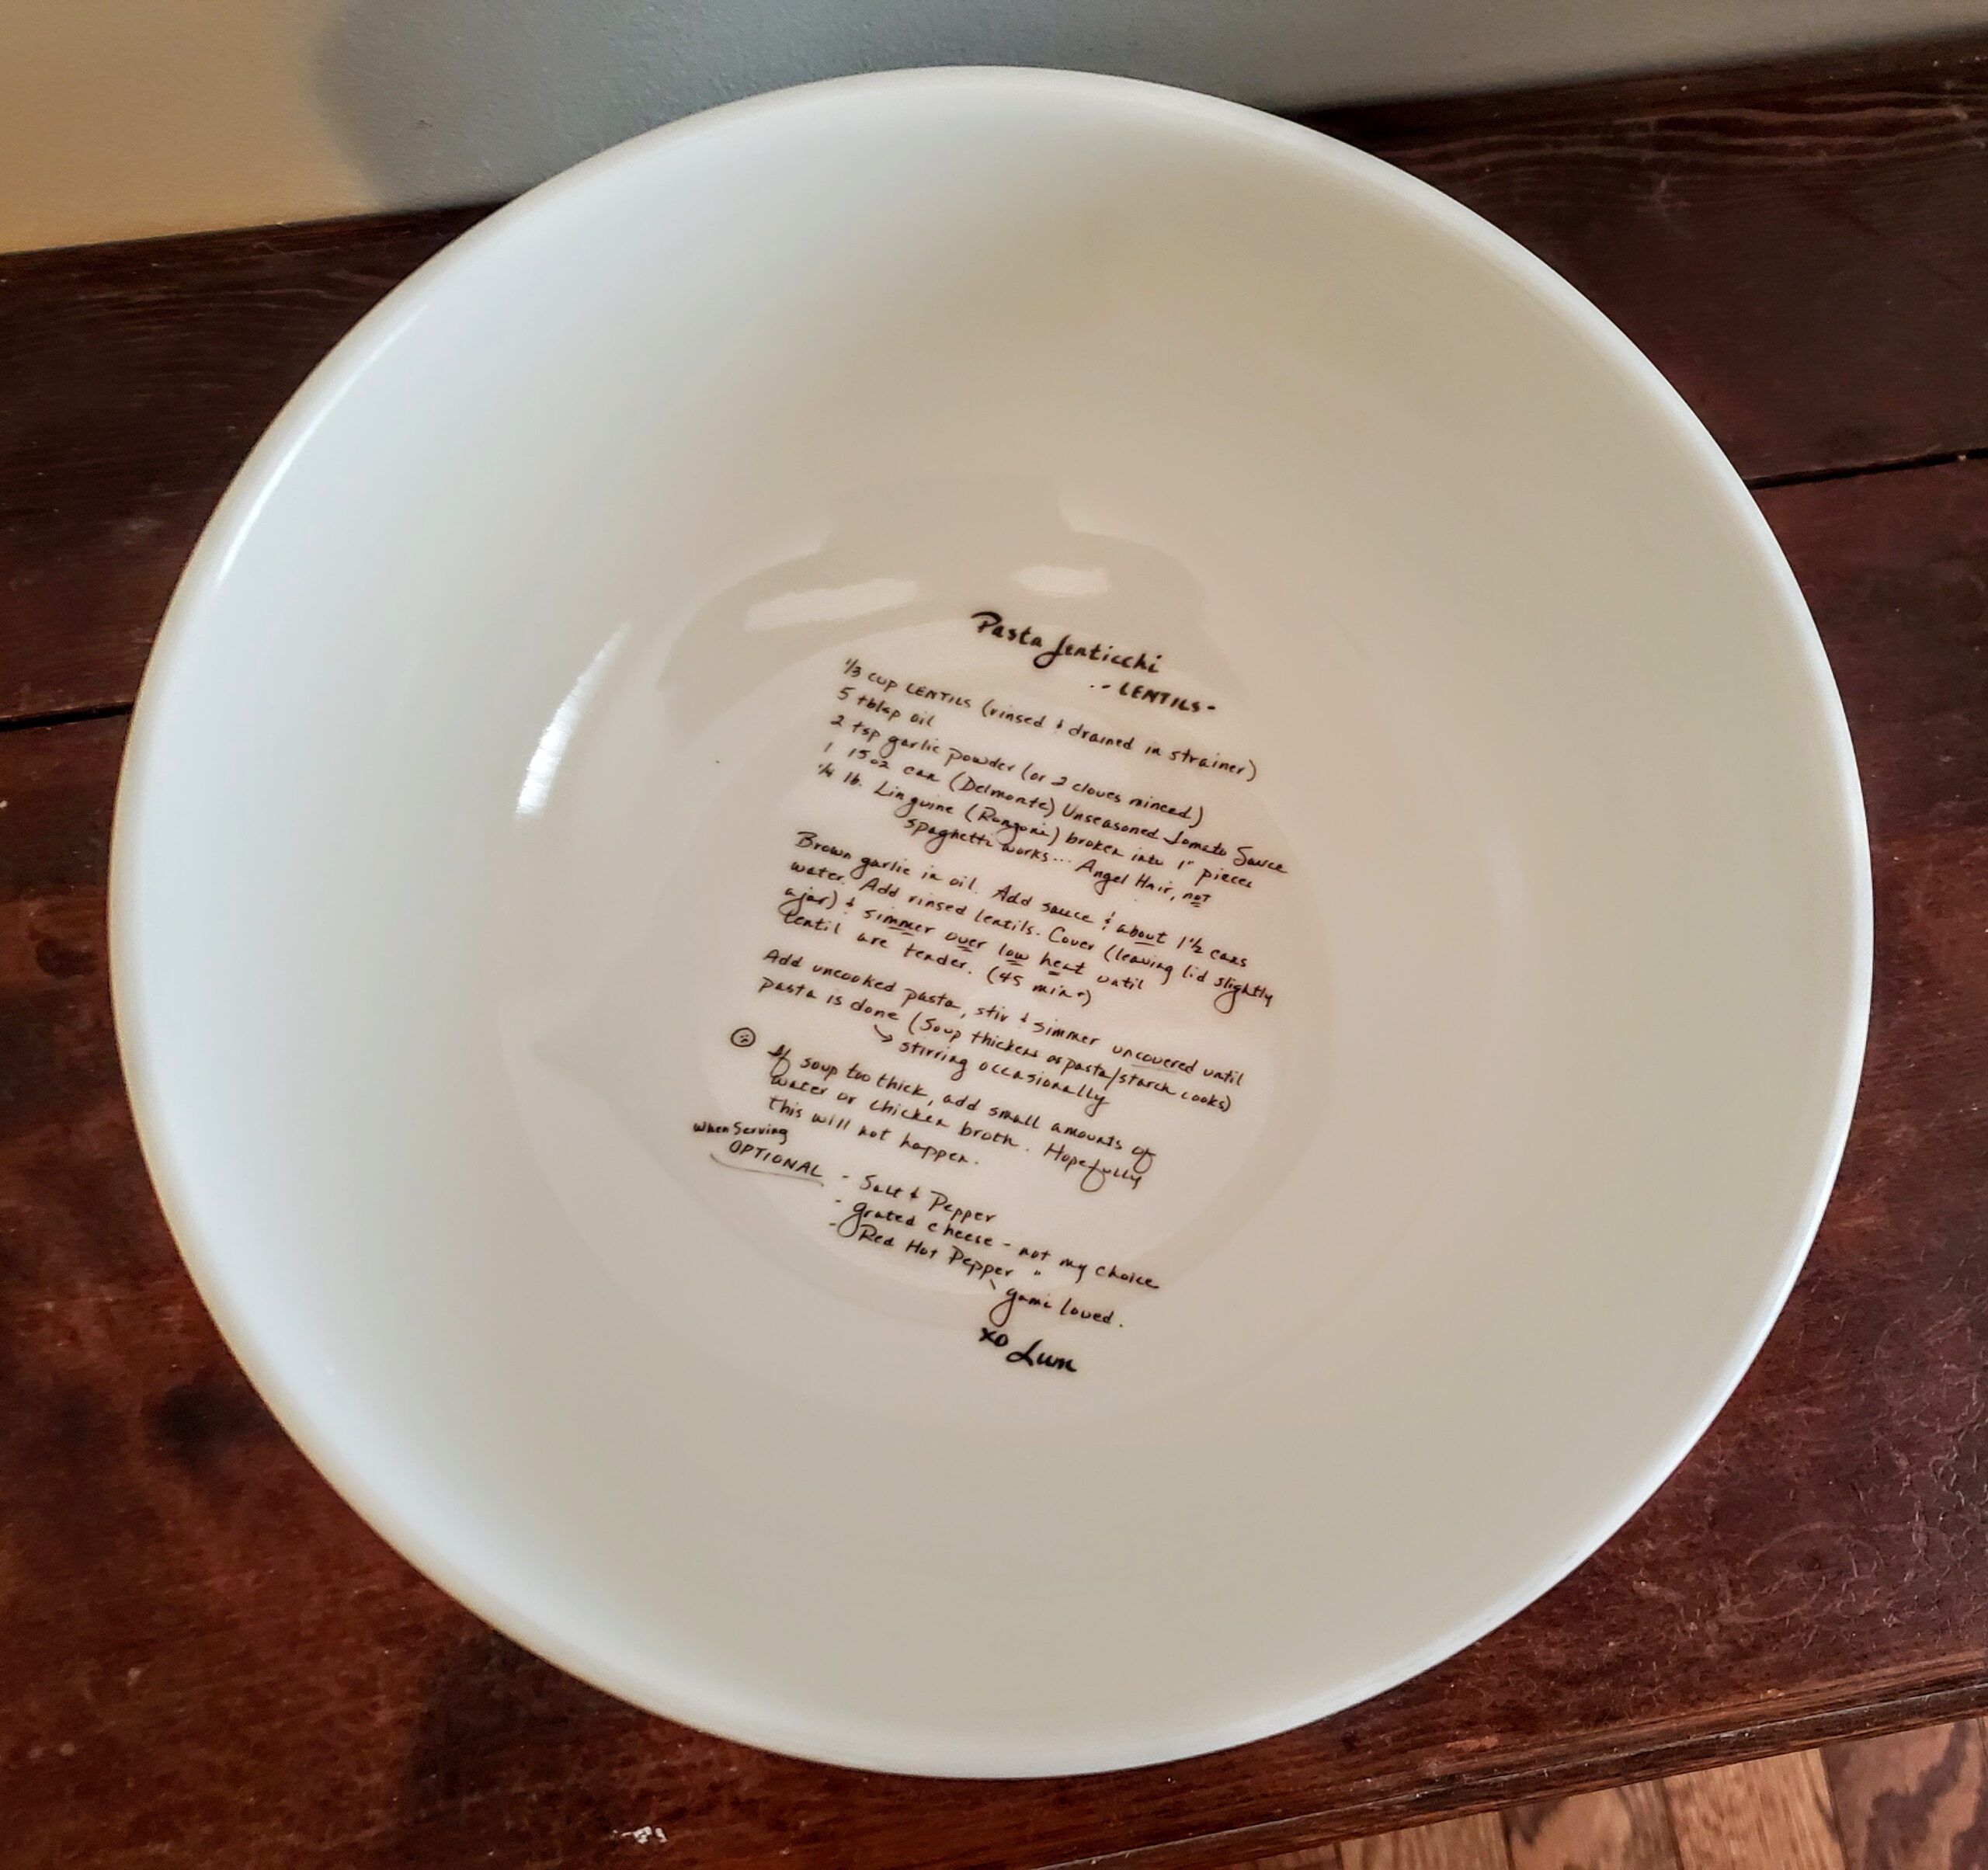 Custom Printed Recipe or Favorite Saying, Scripture, Book Part inside Bowl